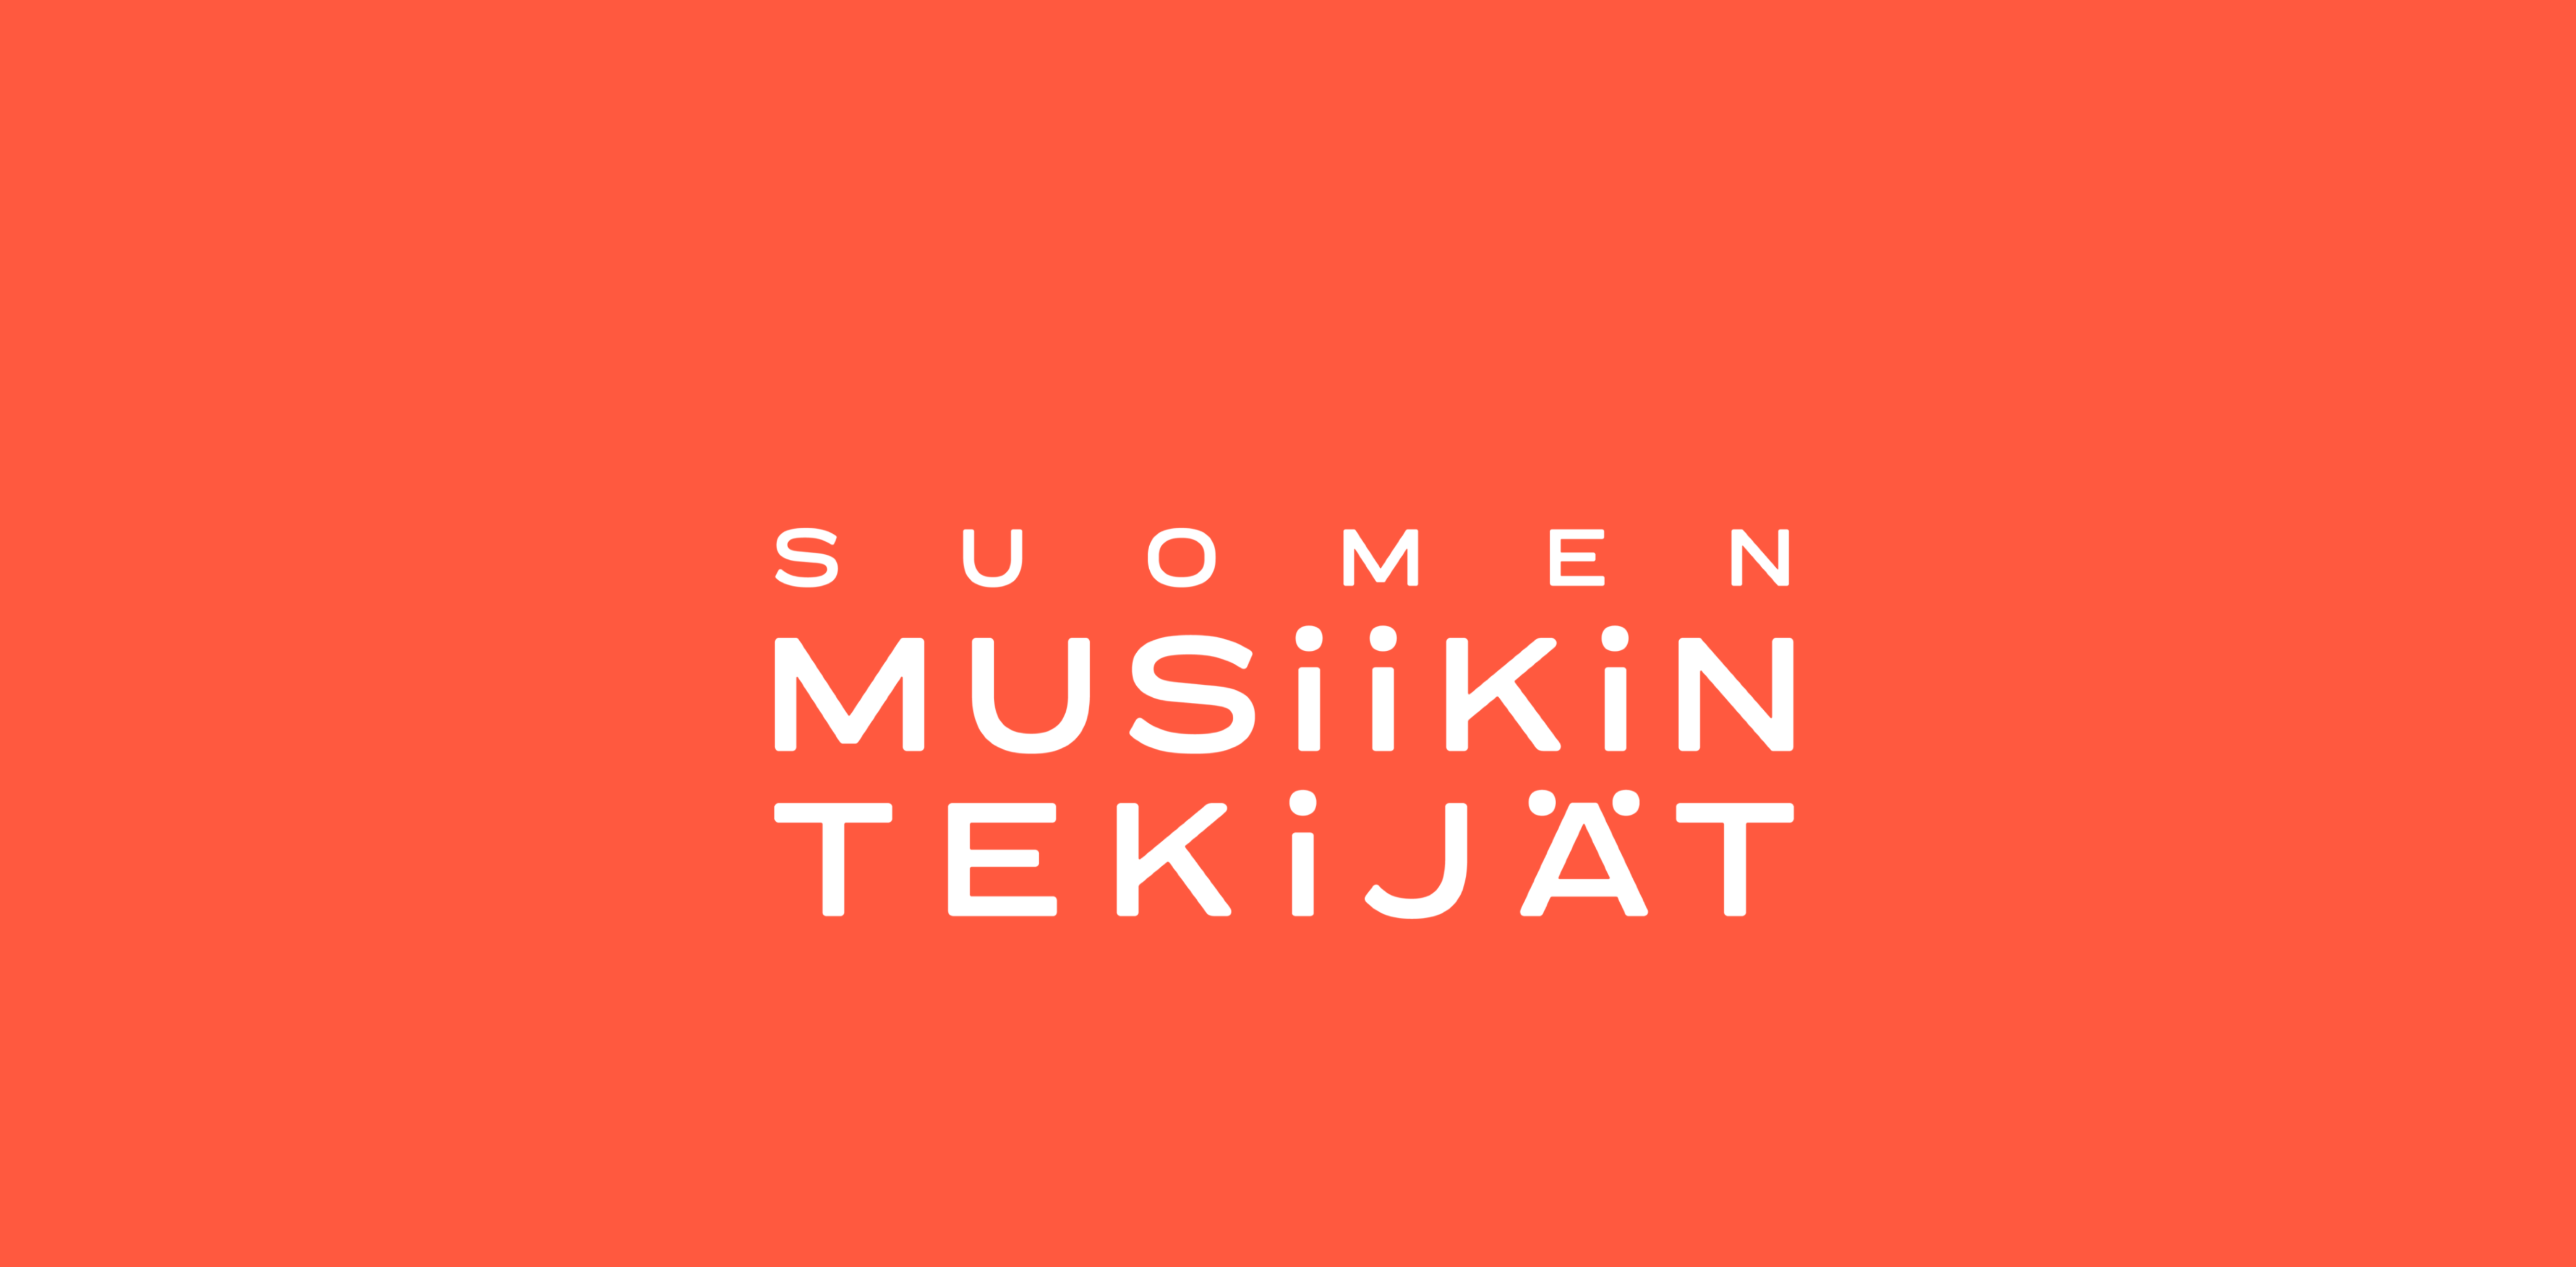 JUURI NYT – Suomen Musiikintekijät ja UMK18